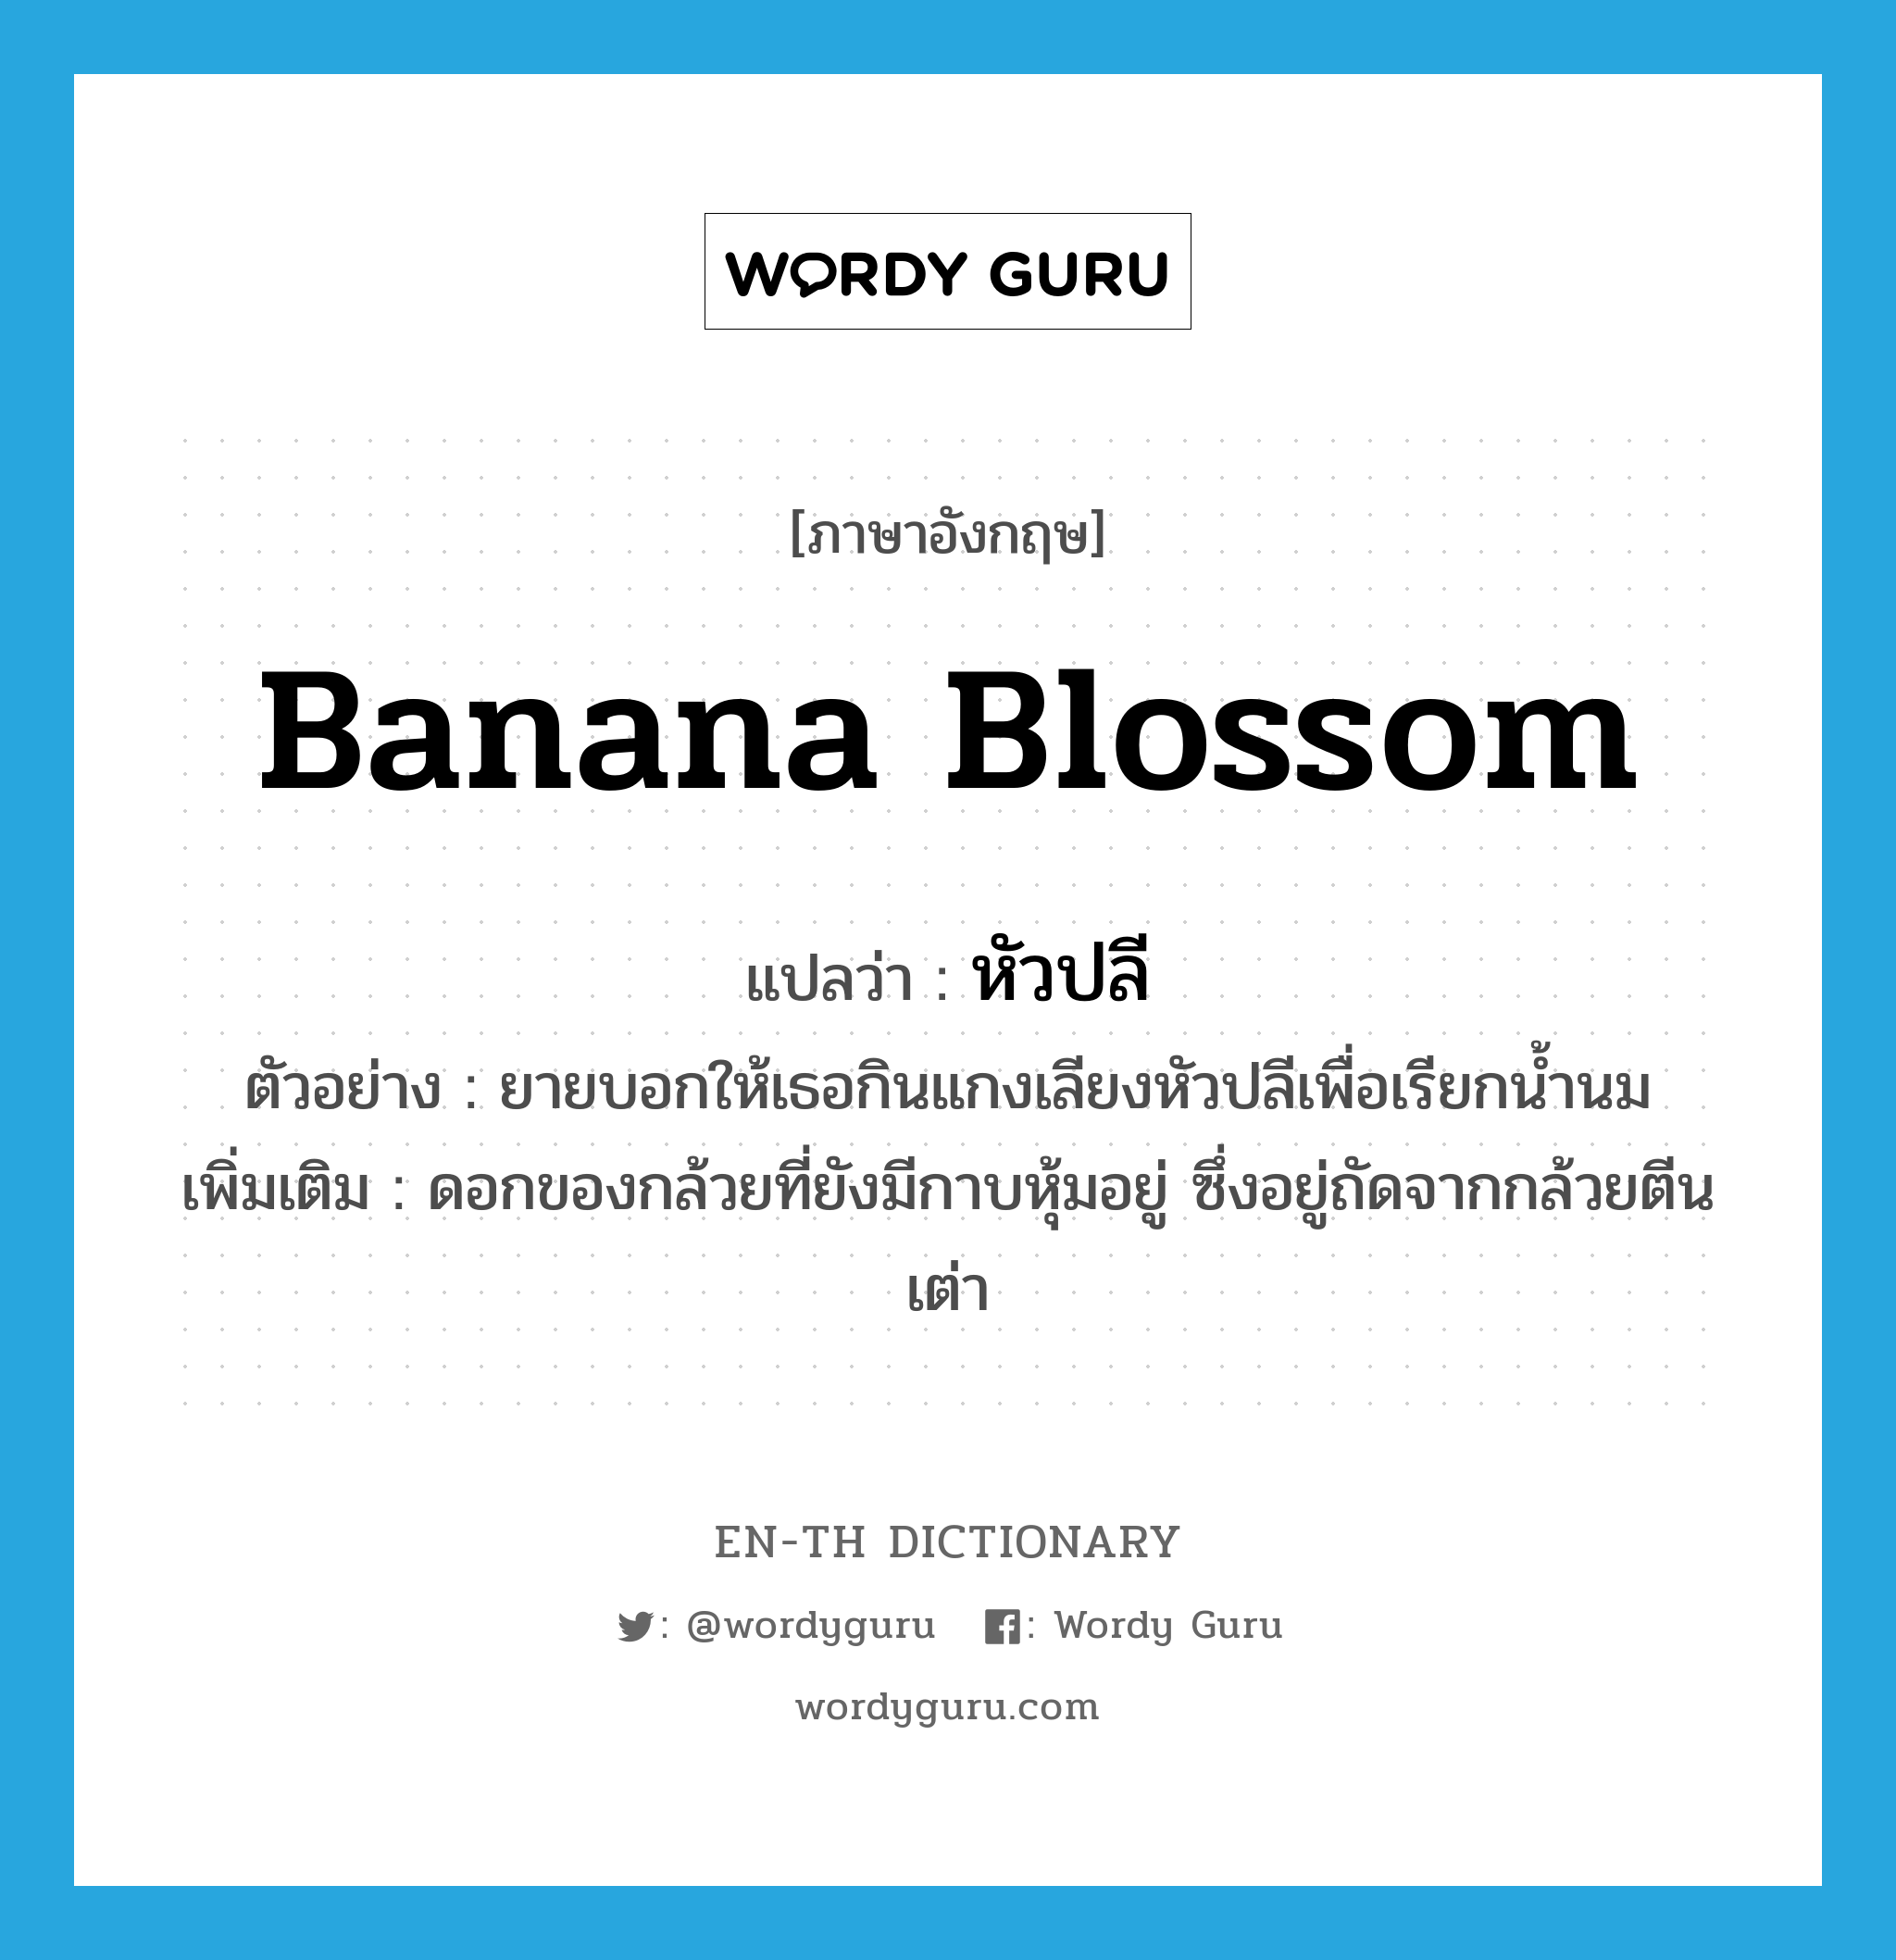 หัวปลี ภาษาอังกฤษ?, คำศัพท์ภาษาอังกฤษ หัวปลี แปลว่า banana blossom ประเภท N ตัวอย่าง ยายบอกให้เธอกินแกงเลียงหัวปลีเพื่อเรียกน้ำนม เพิ่มเติม ดอกของกล้วยที่ยังมีกาบหุ้มอยู่ ซึ่งอยู่ถัดจากกล้วยตีนเต่า หมวด N